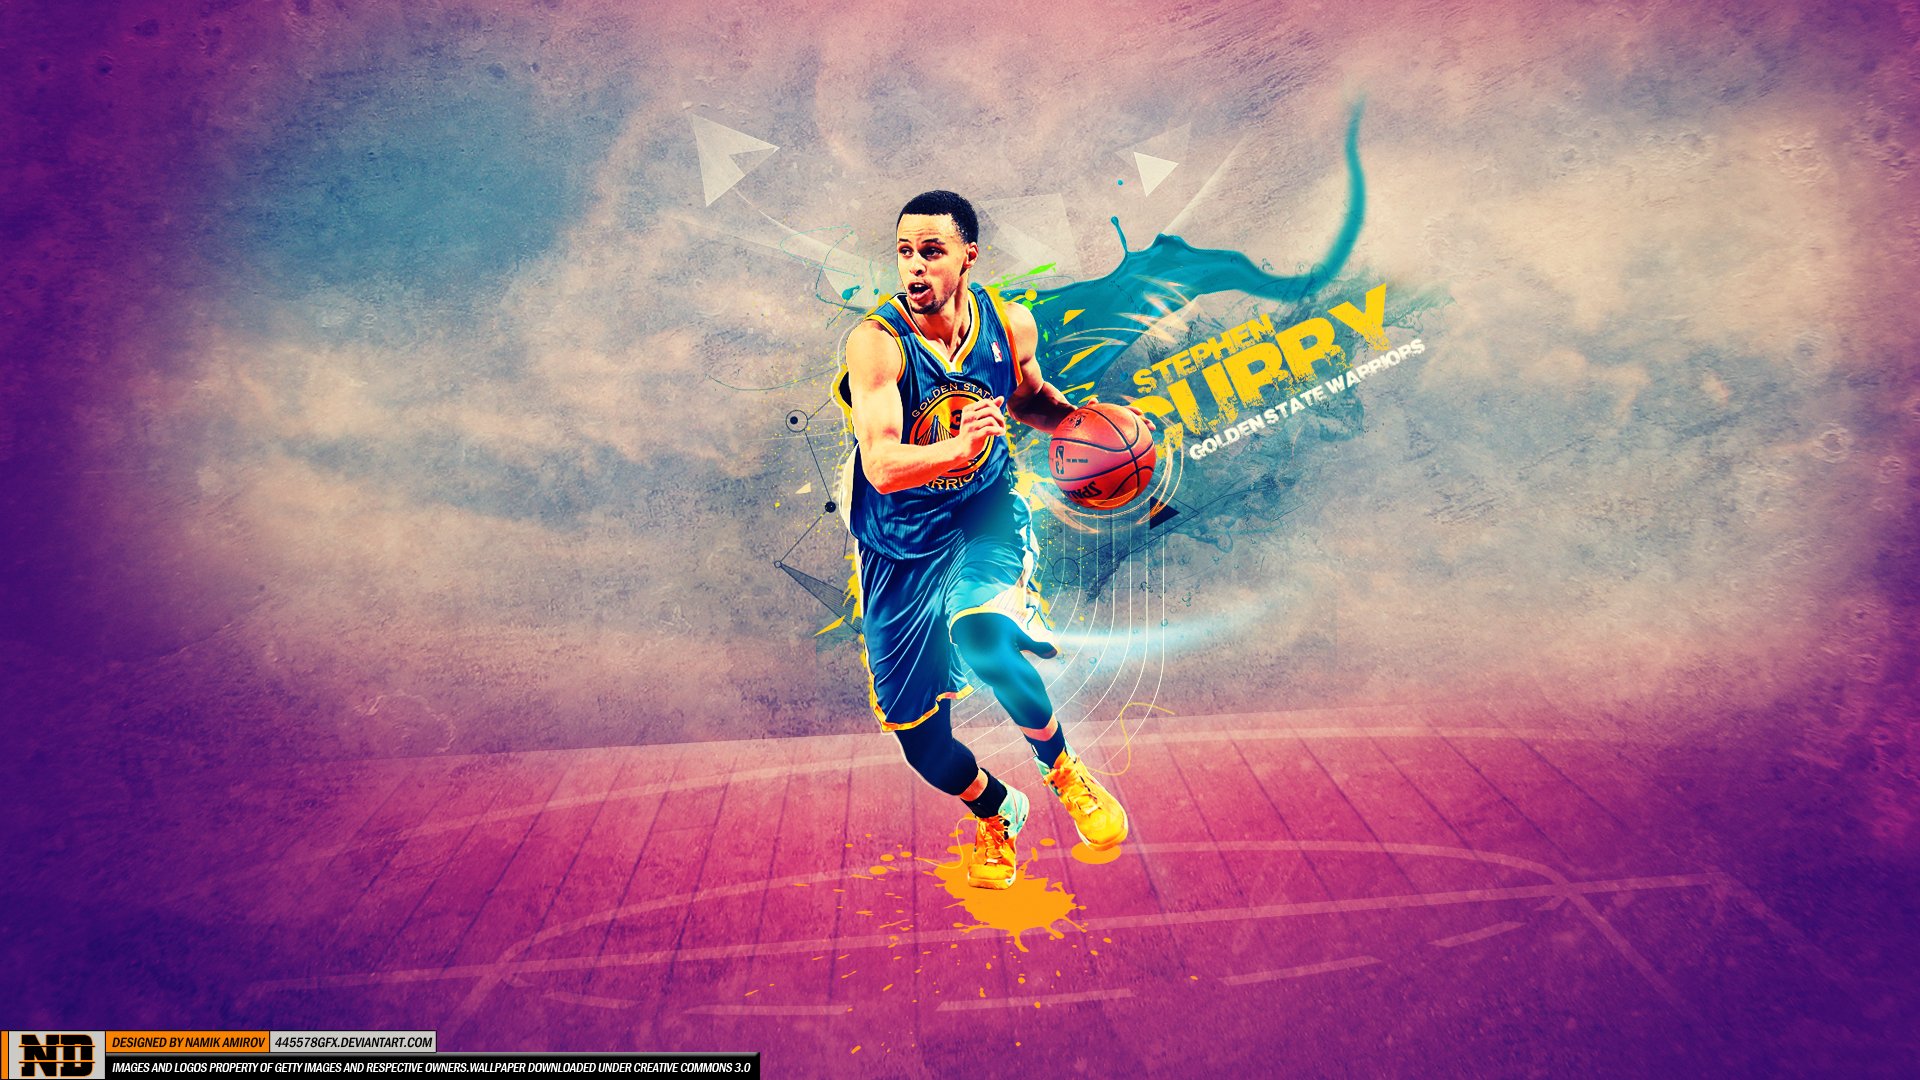 GOLDEN STATE WARRIORS nba basketball poster wallpaper, 2560x1440, 983335